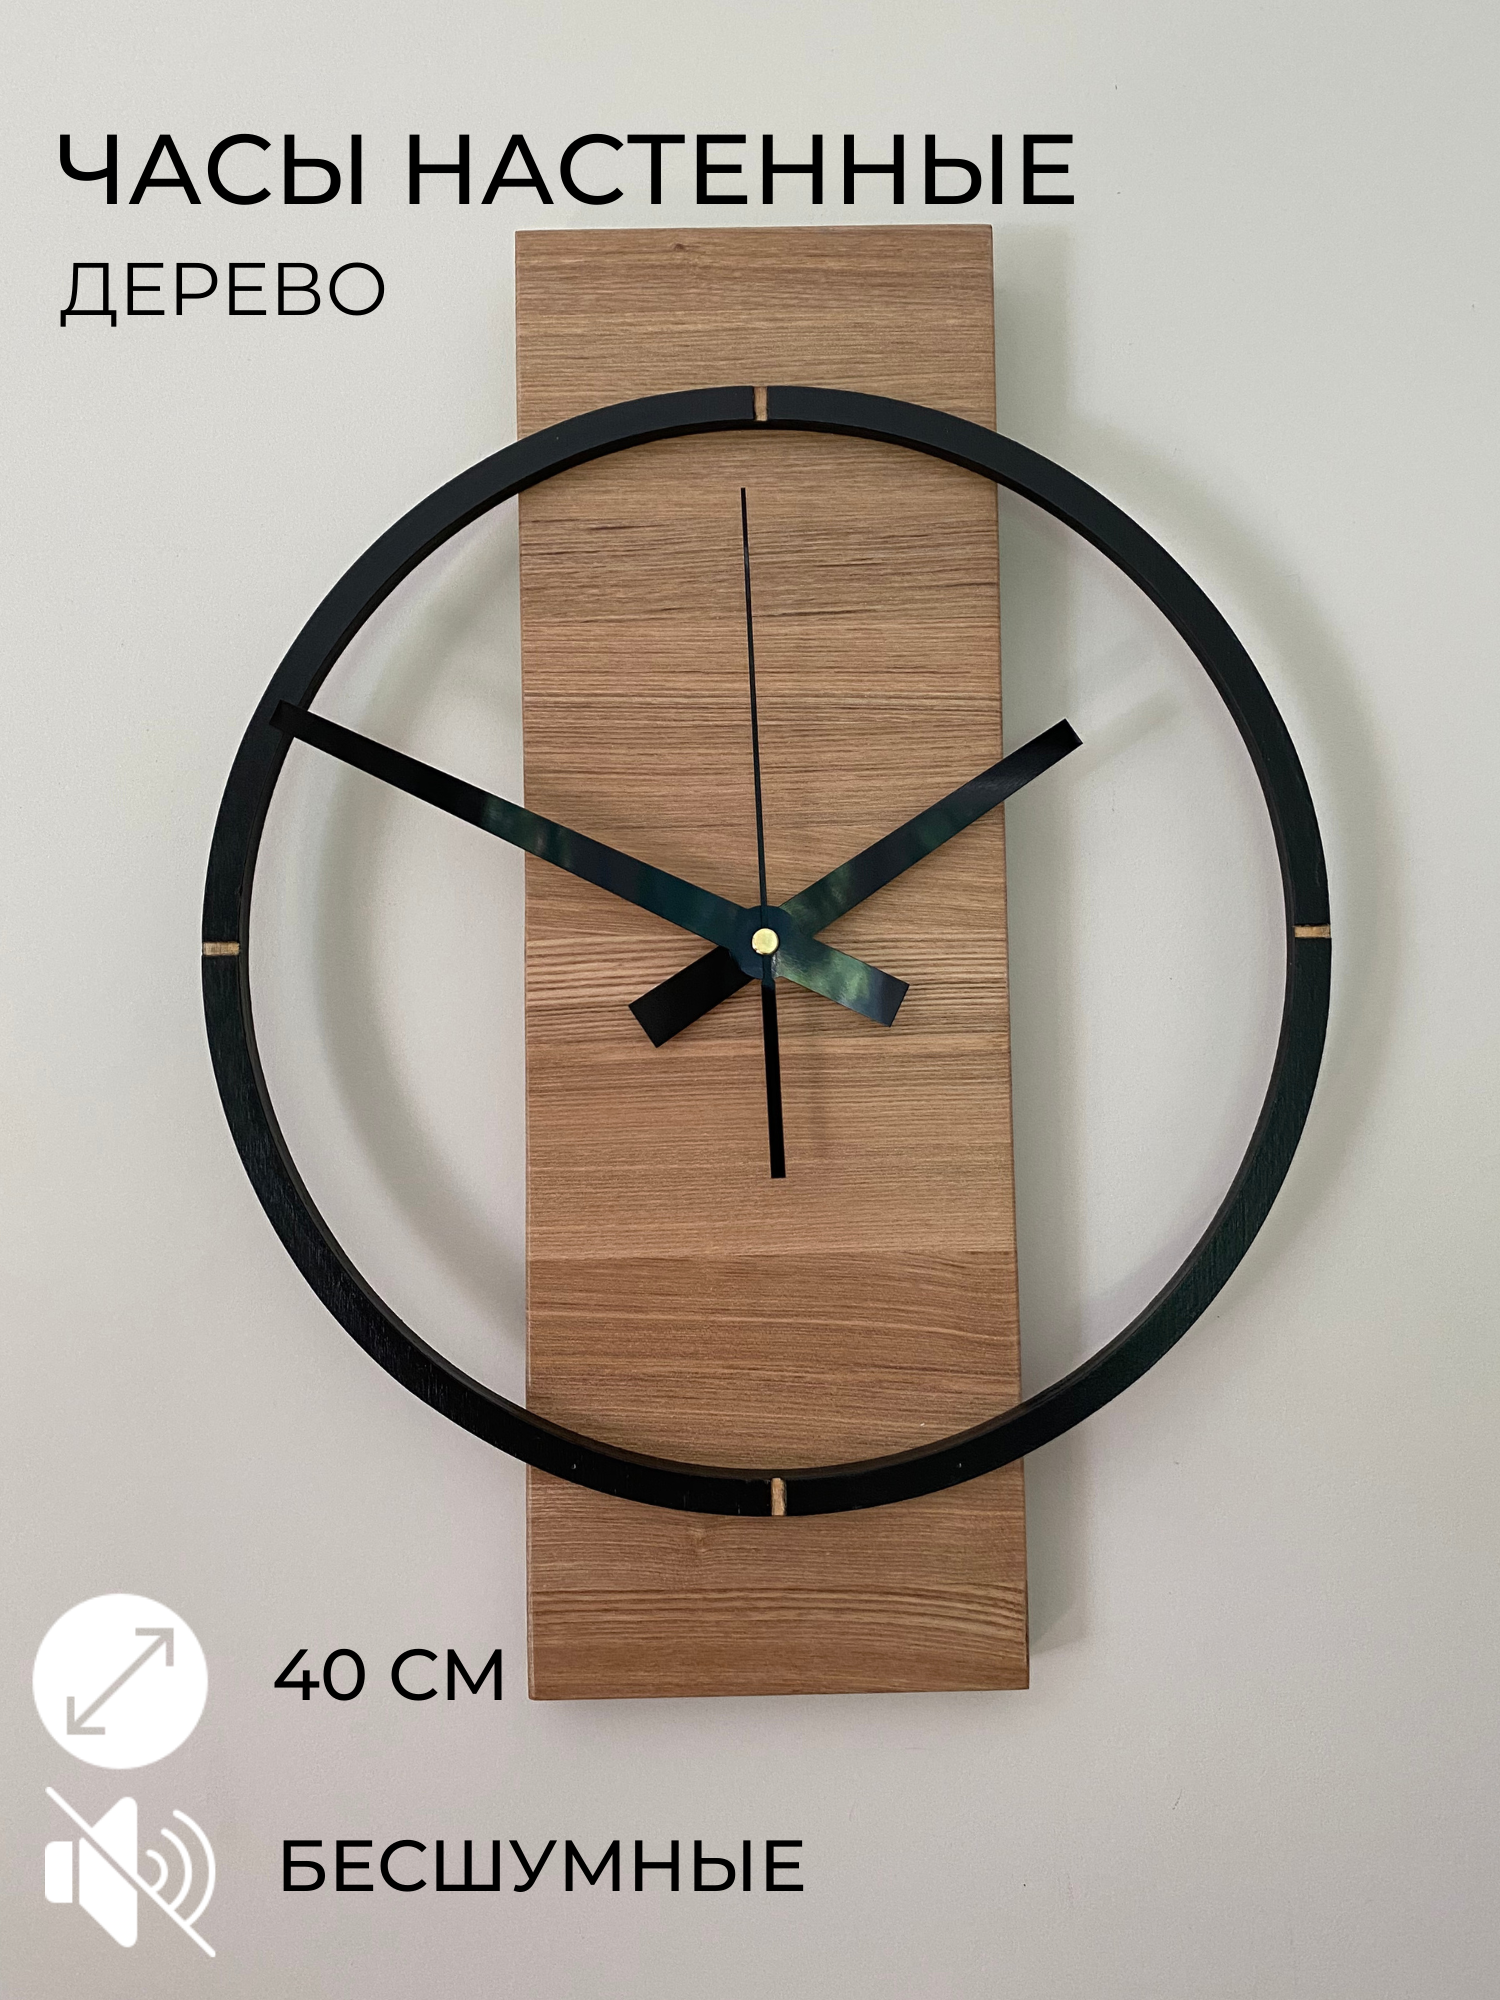 Часы настенные 40см воздушные из дерева